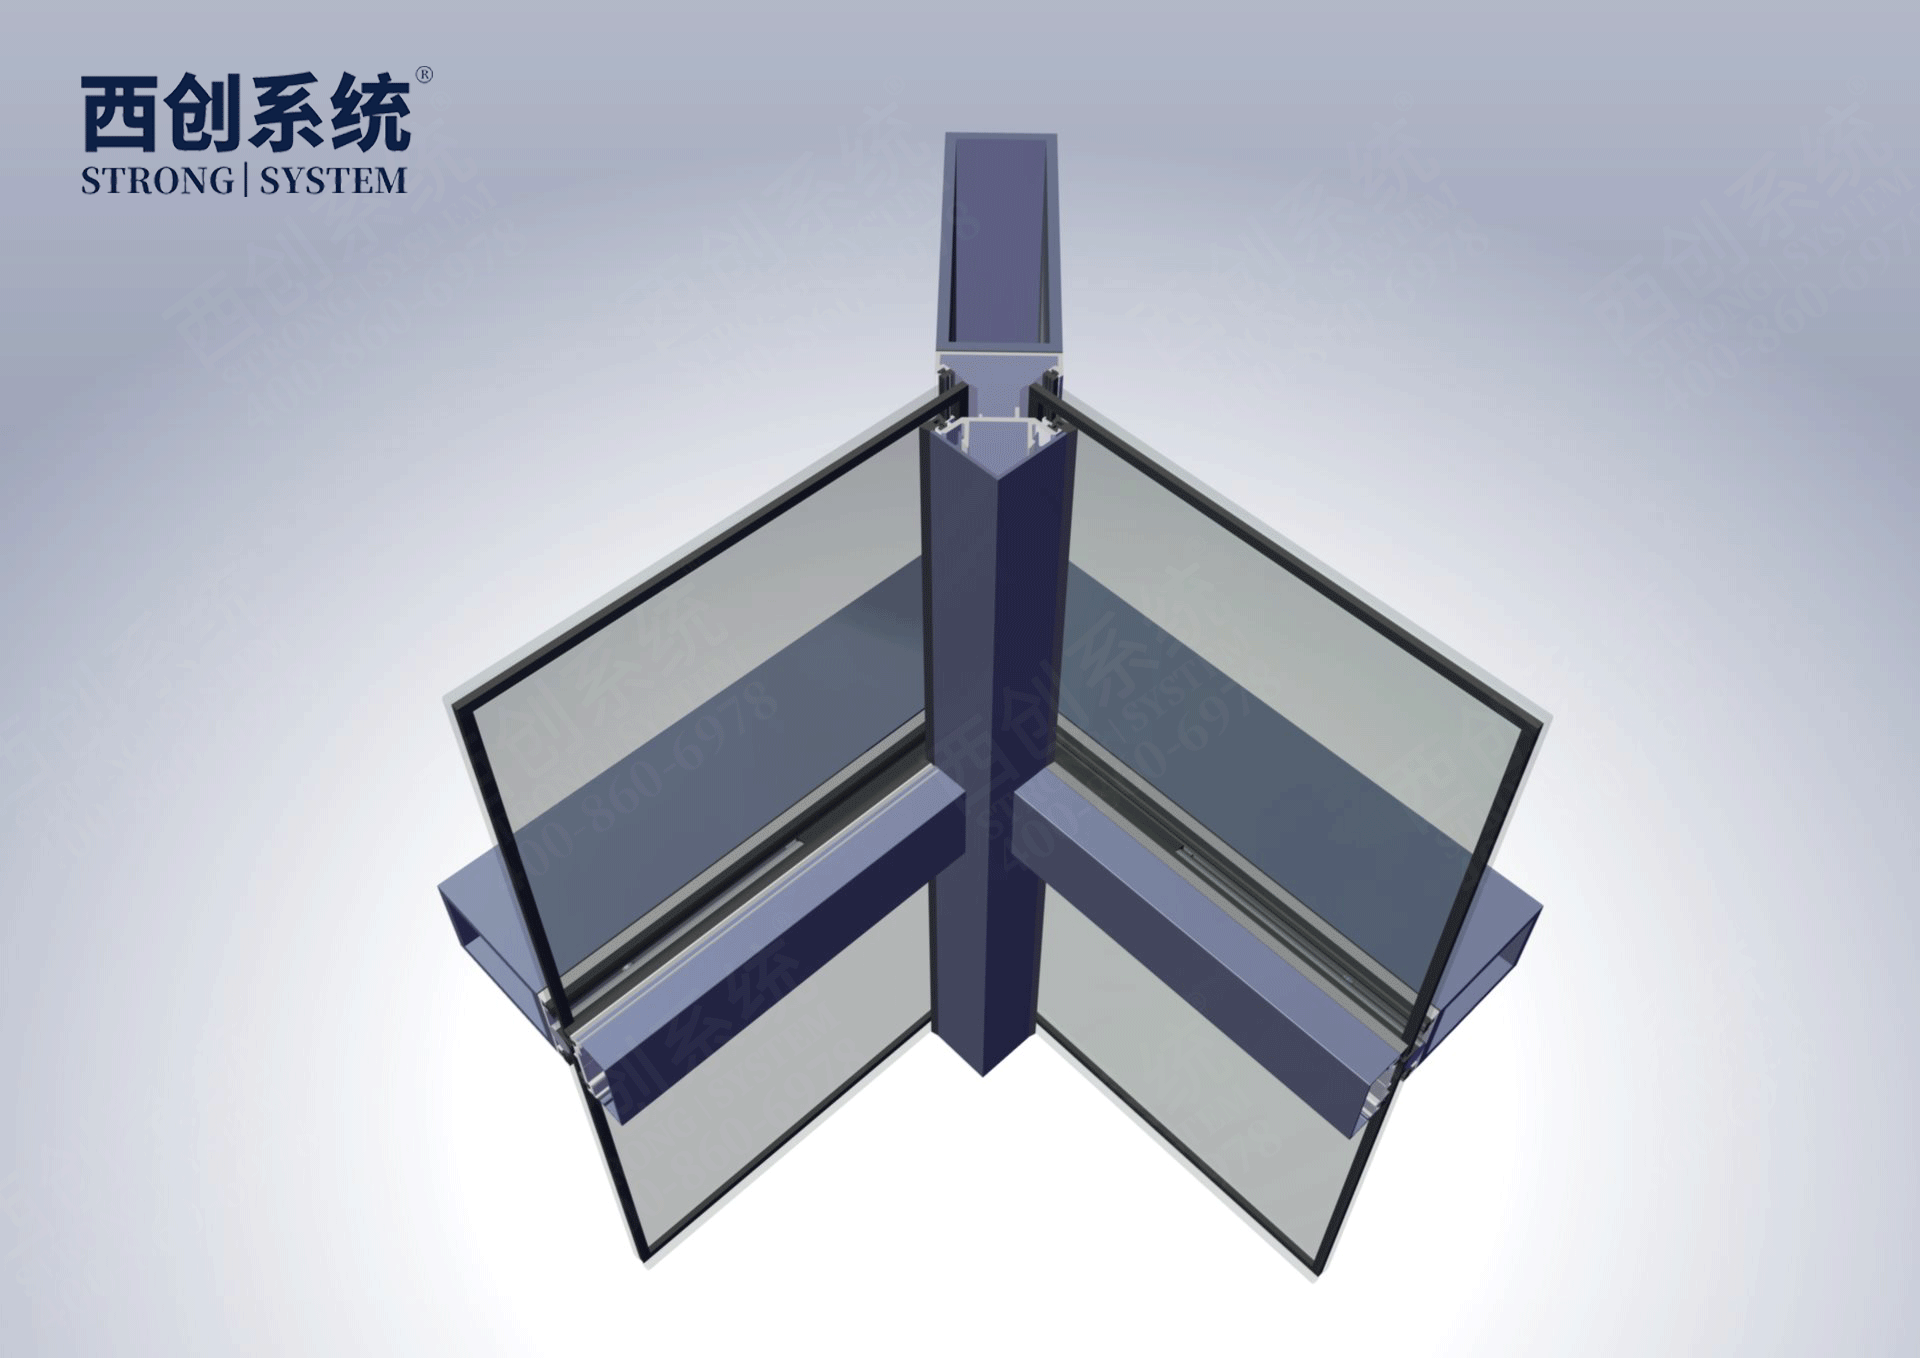 多截面精制钢幕墙型材90度阴角转接方法-西创系统(图5)